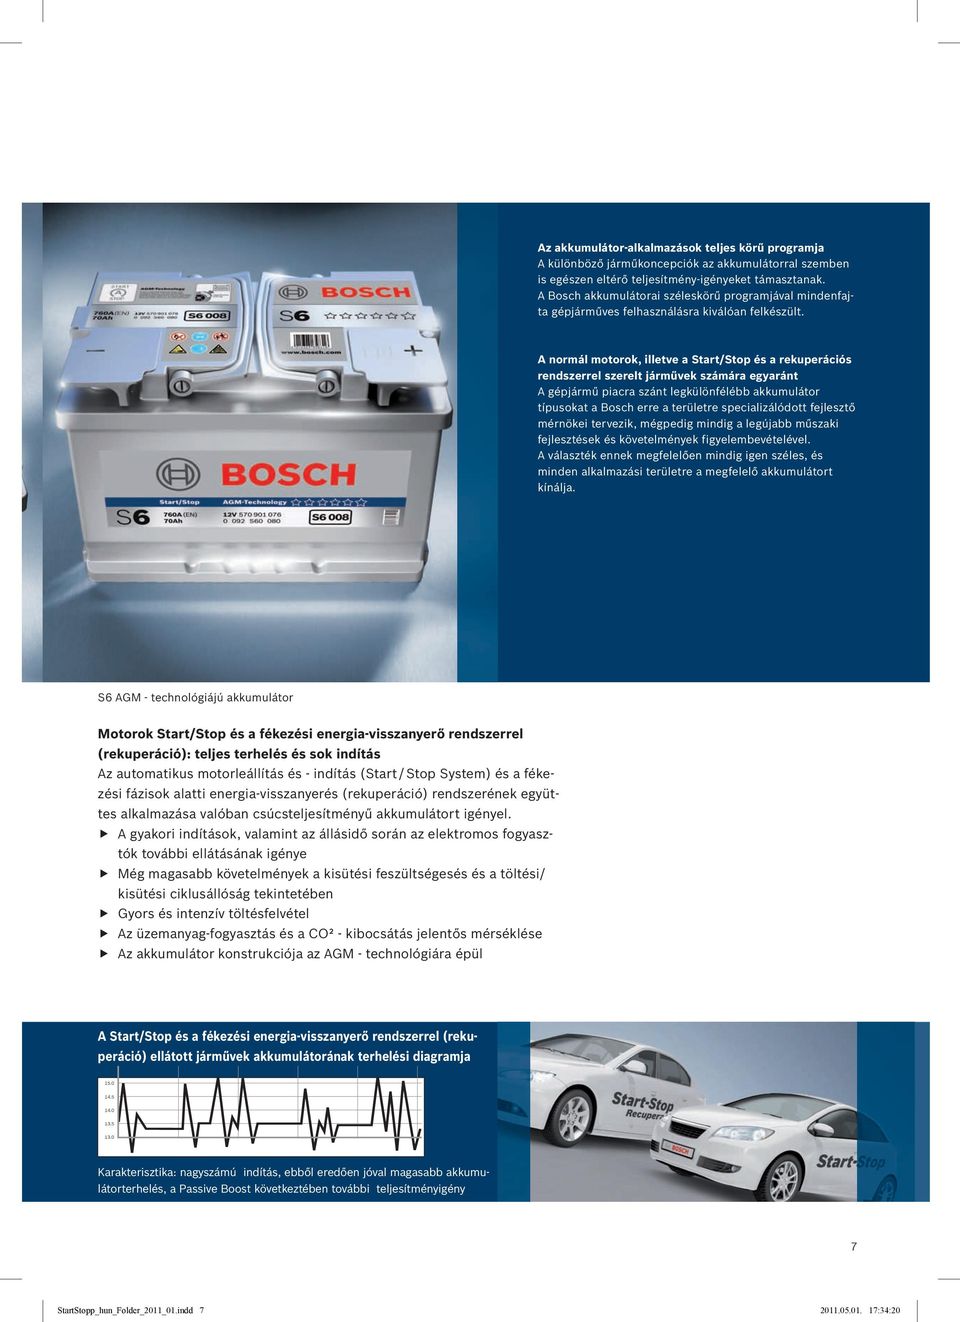 A normál motorok, illetve a Start/Stop és a rekuperációs rendszerrel szerelt járművek számára egyaránt A gépjármű piacra szánt legkülönfélébb akkumulátor típusokat a Bosch erre a területre